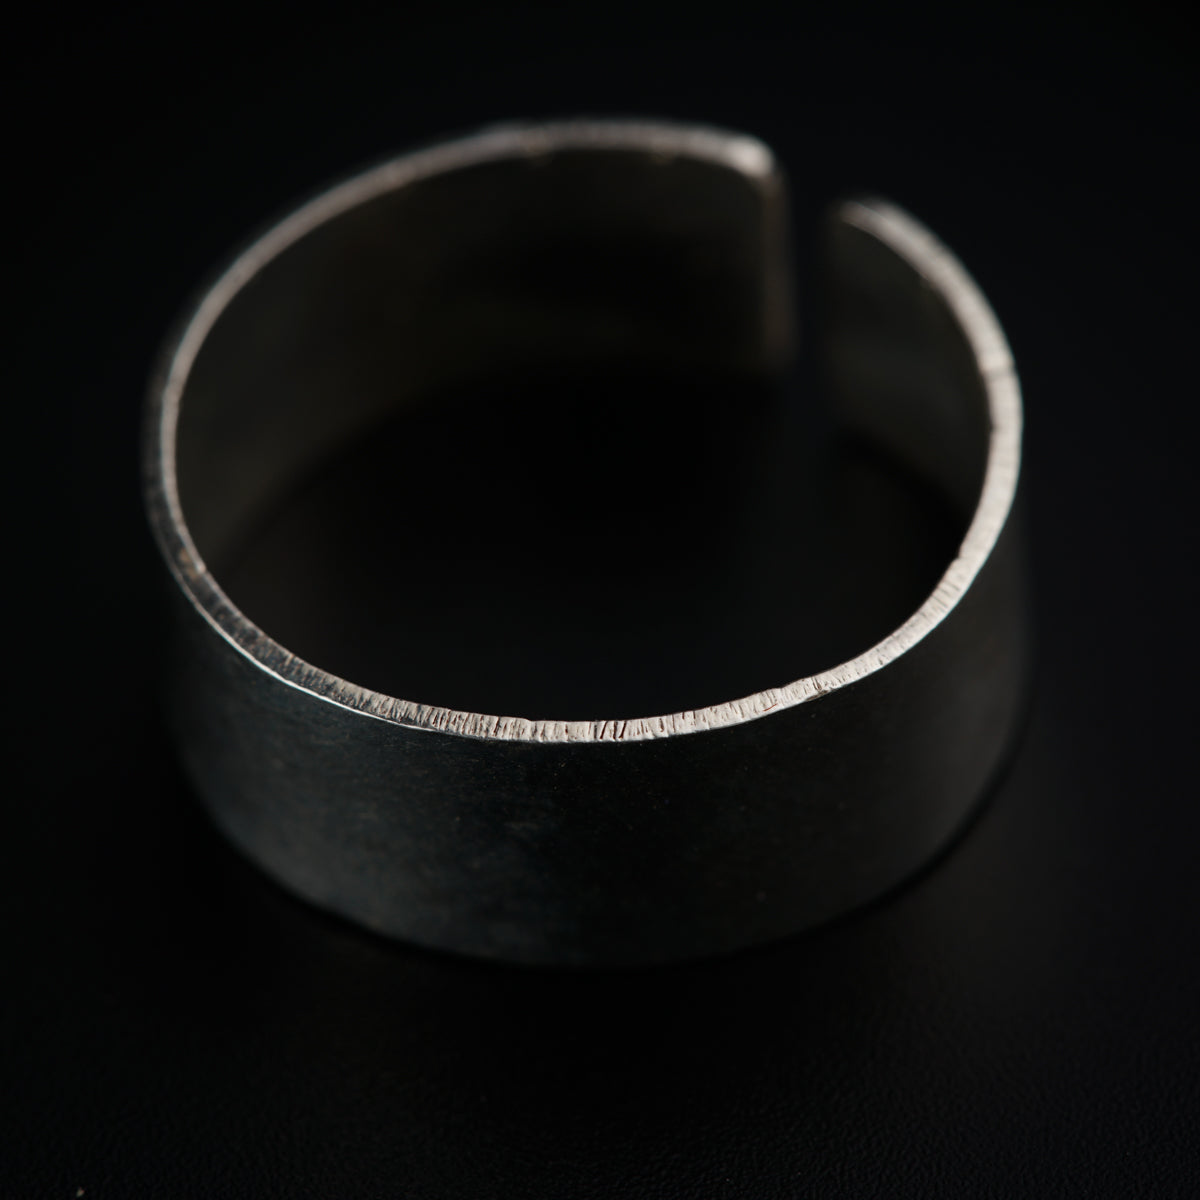 Buy Silver Titanium Classic 5mm Band Ring Online - INOX Jewelry - Inox  Jewelry India